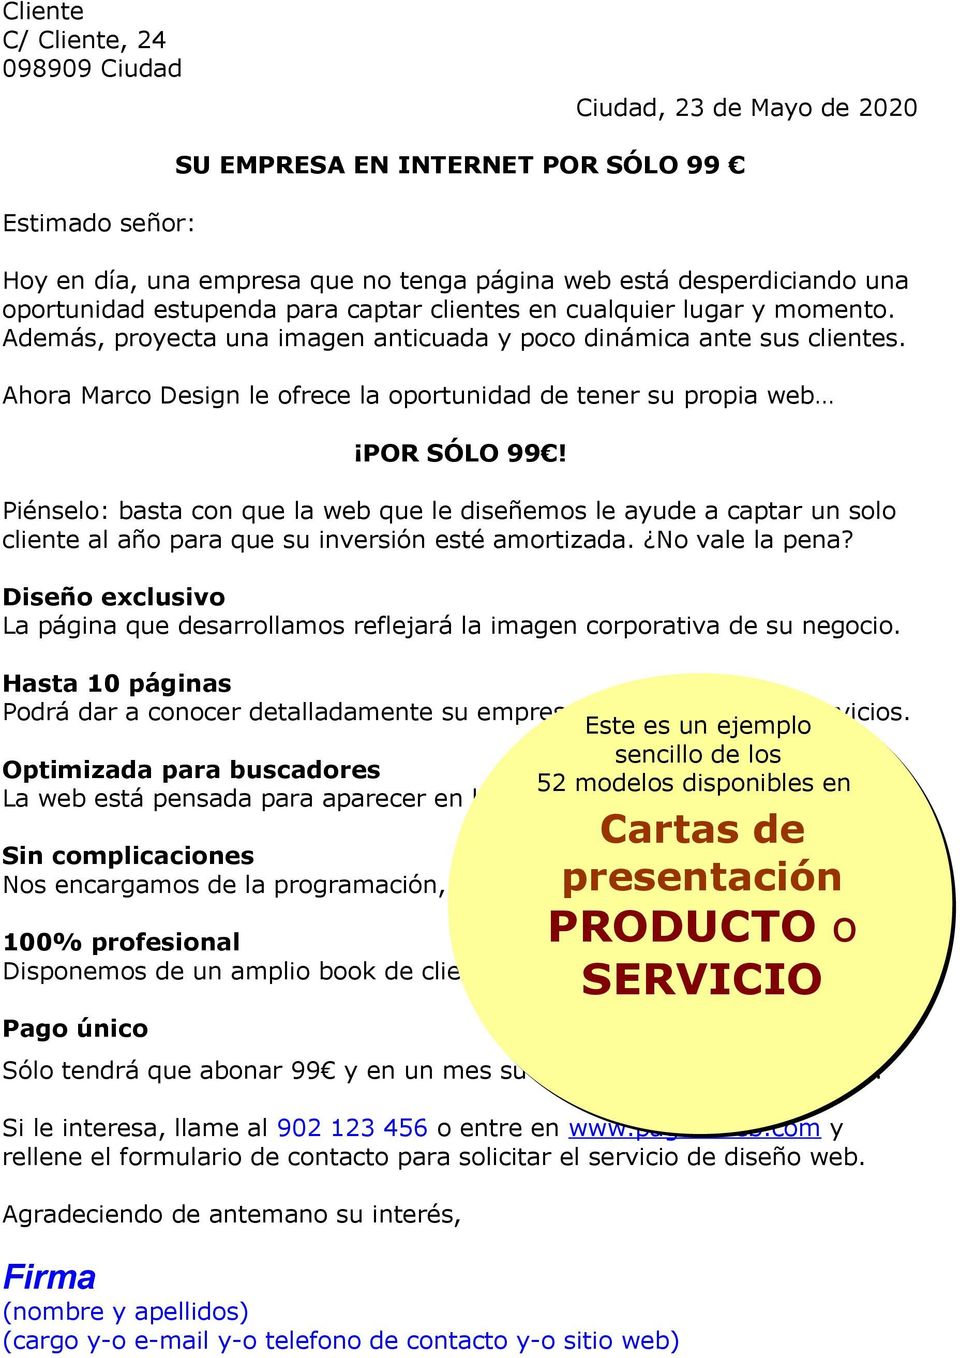 Modelos PDF. Cartas Comerciales MUESTRAS GRATIS - PDF Descargar libre